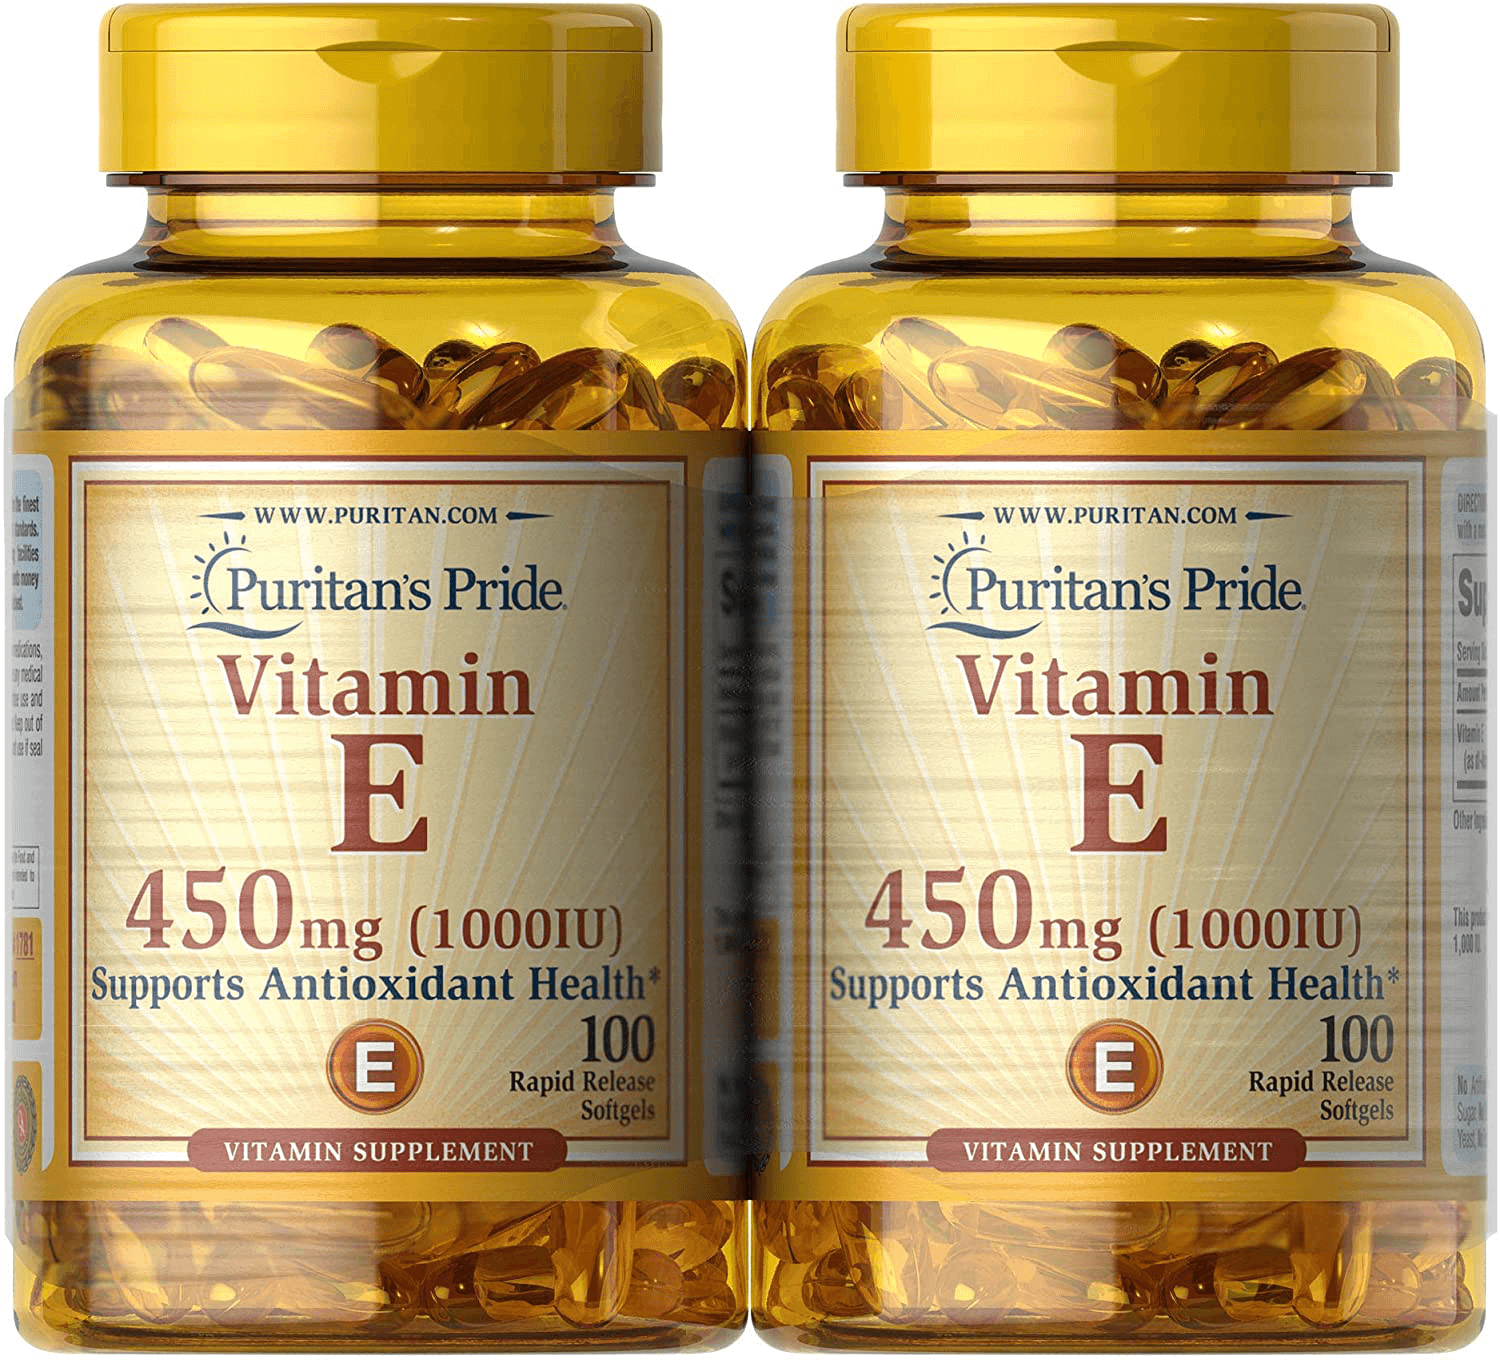 Puritan's Pride Vitamin E 450 Mg Supports Immune Function - vitamenstore.com